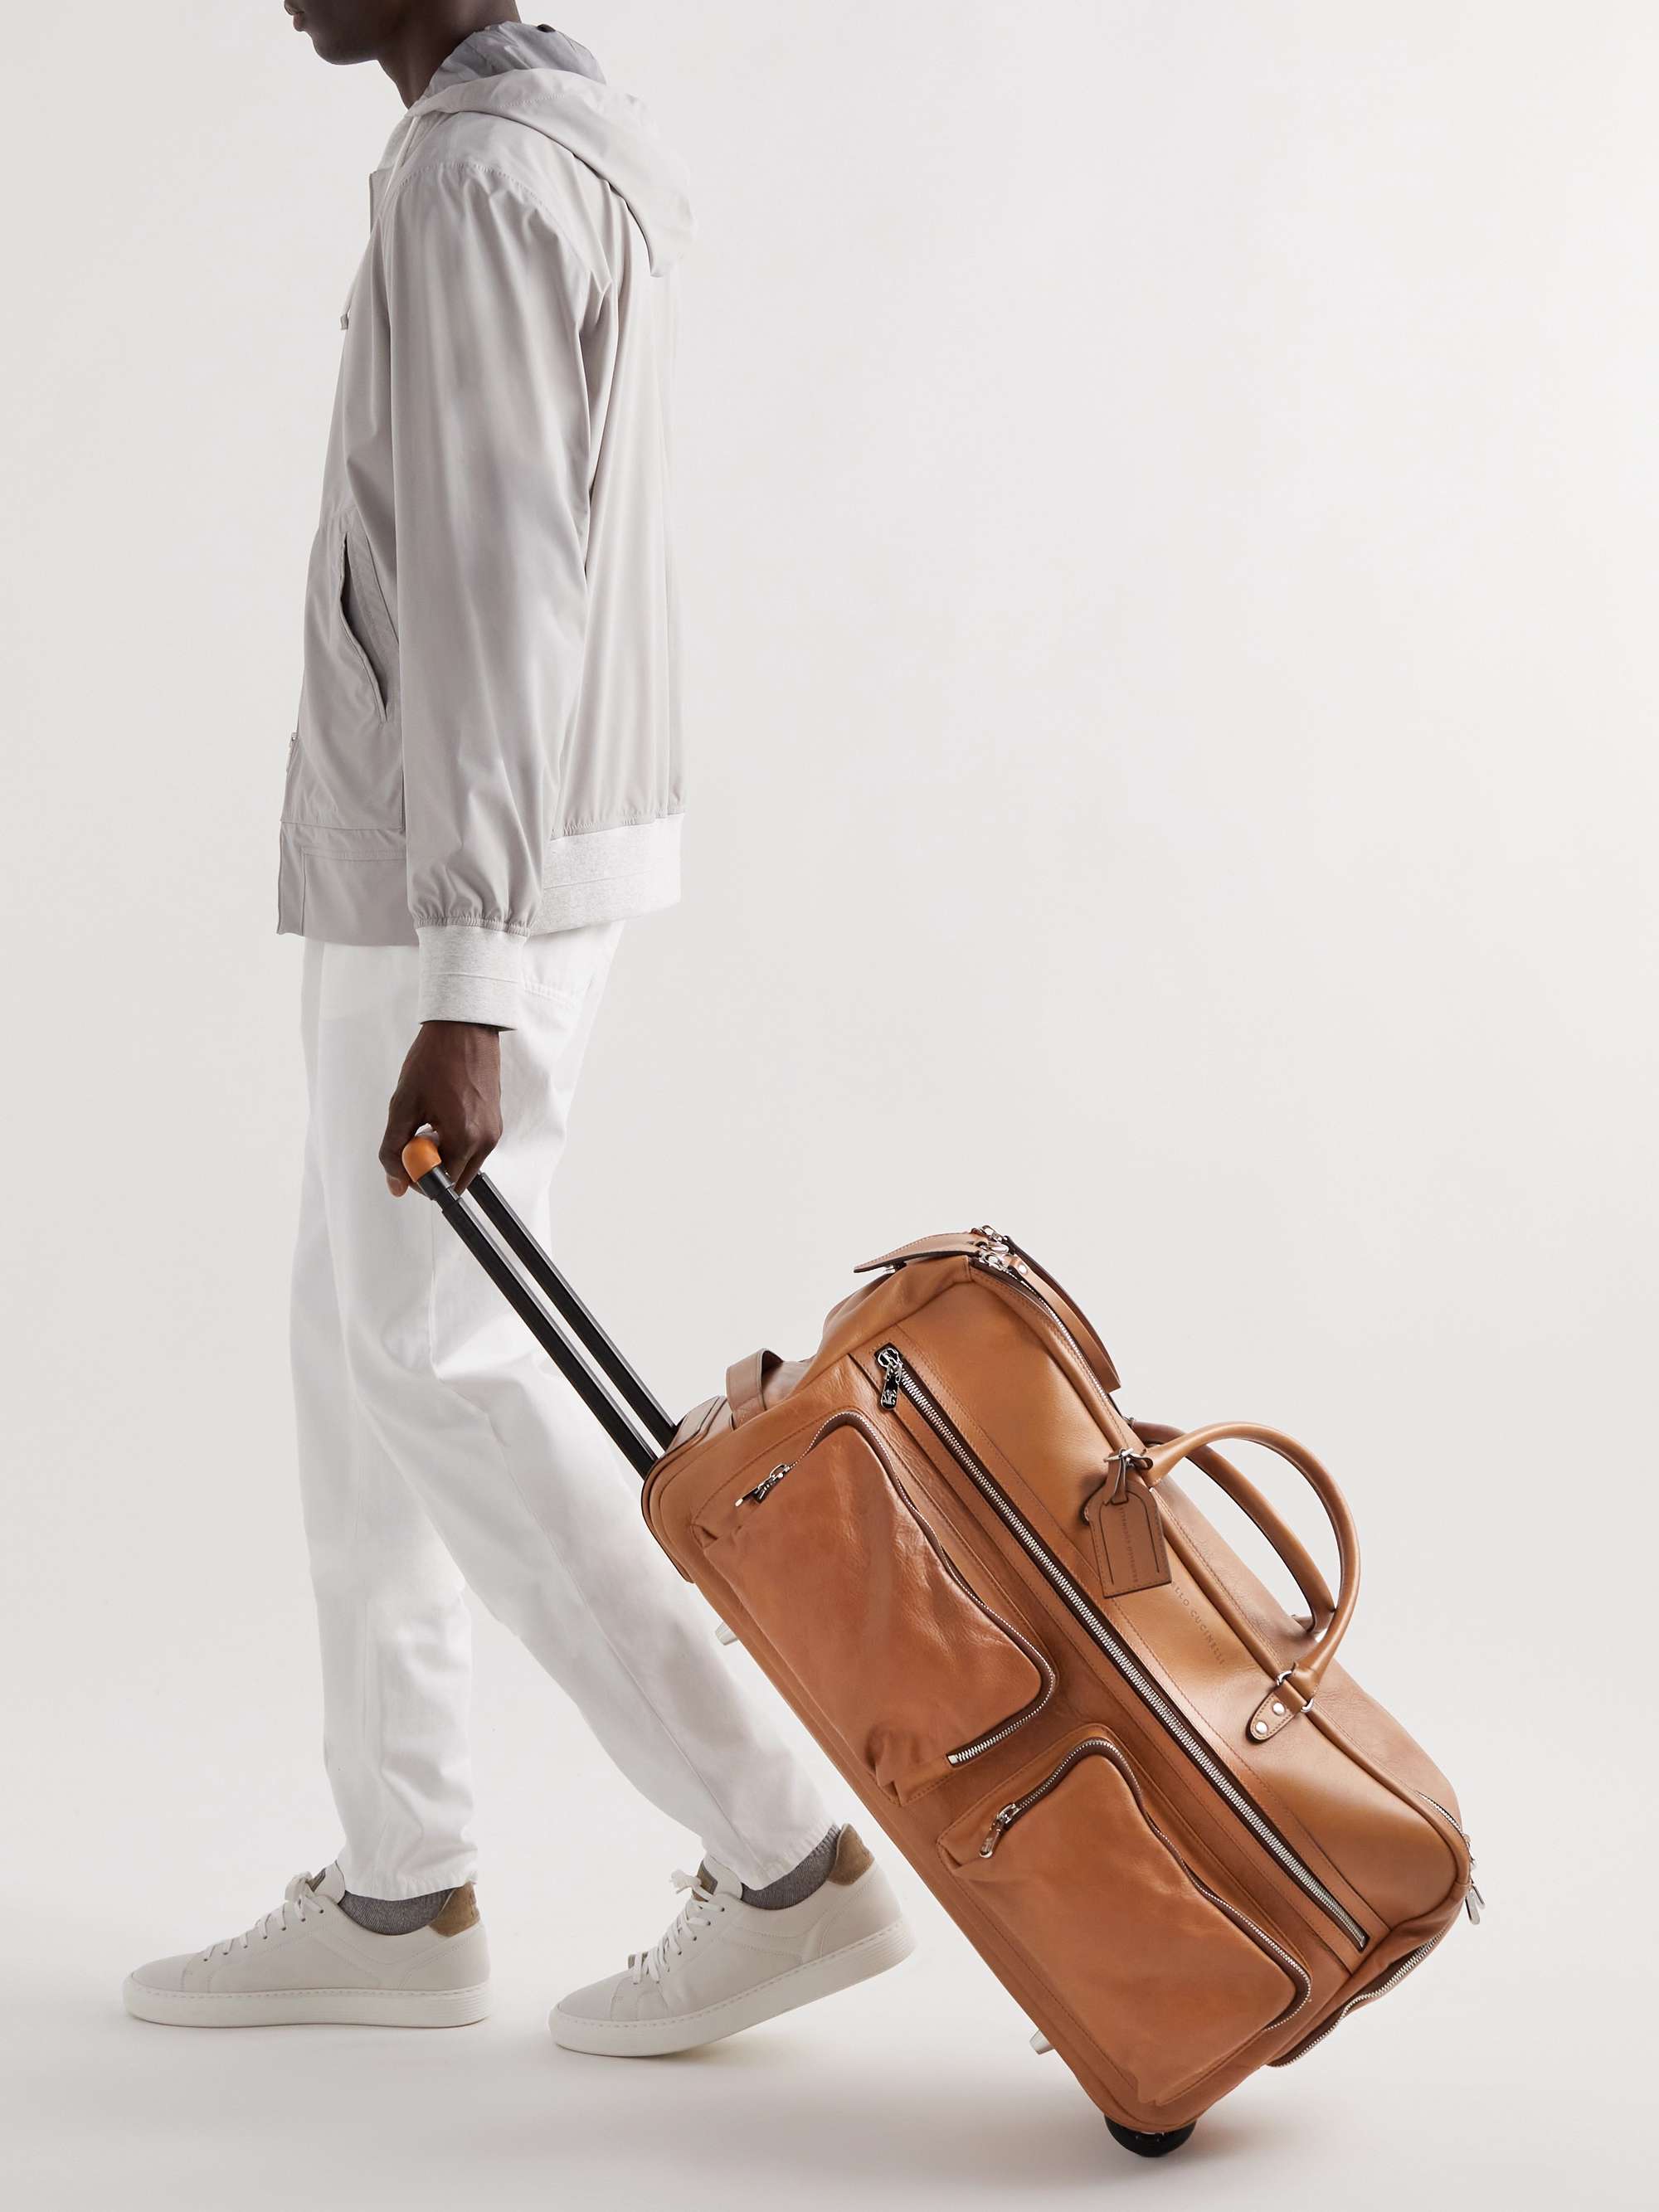 BRUNELLO CUCINELLI Leather Suitcase